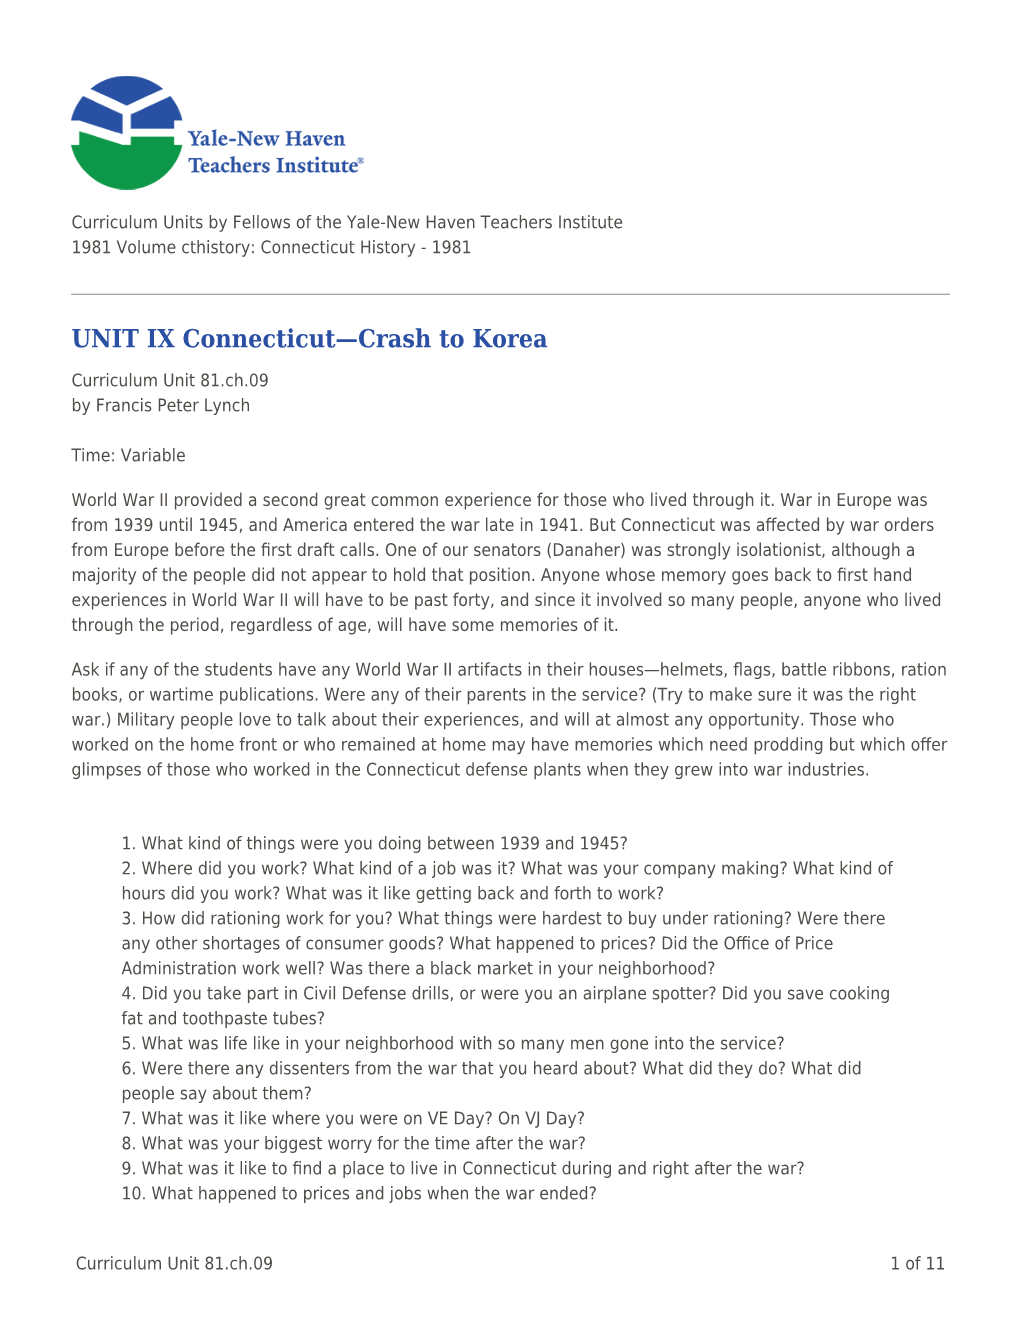 UNIT IX Connecticut—Crash to Korea